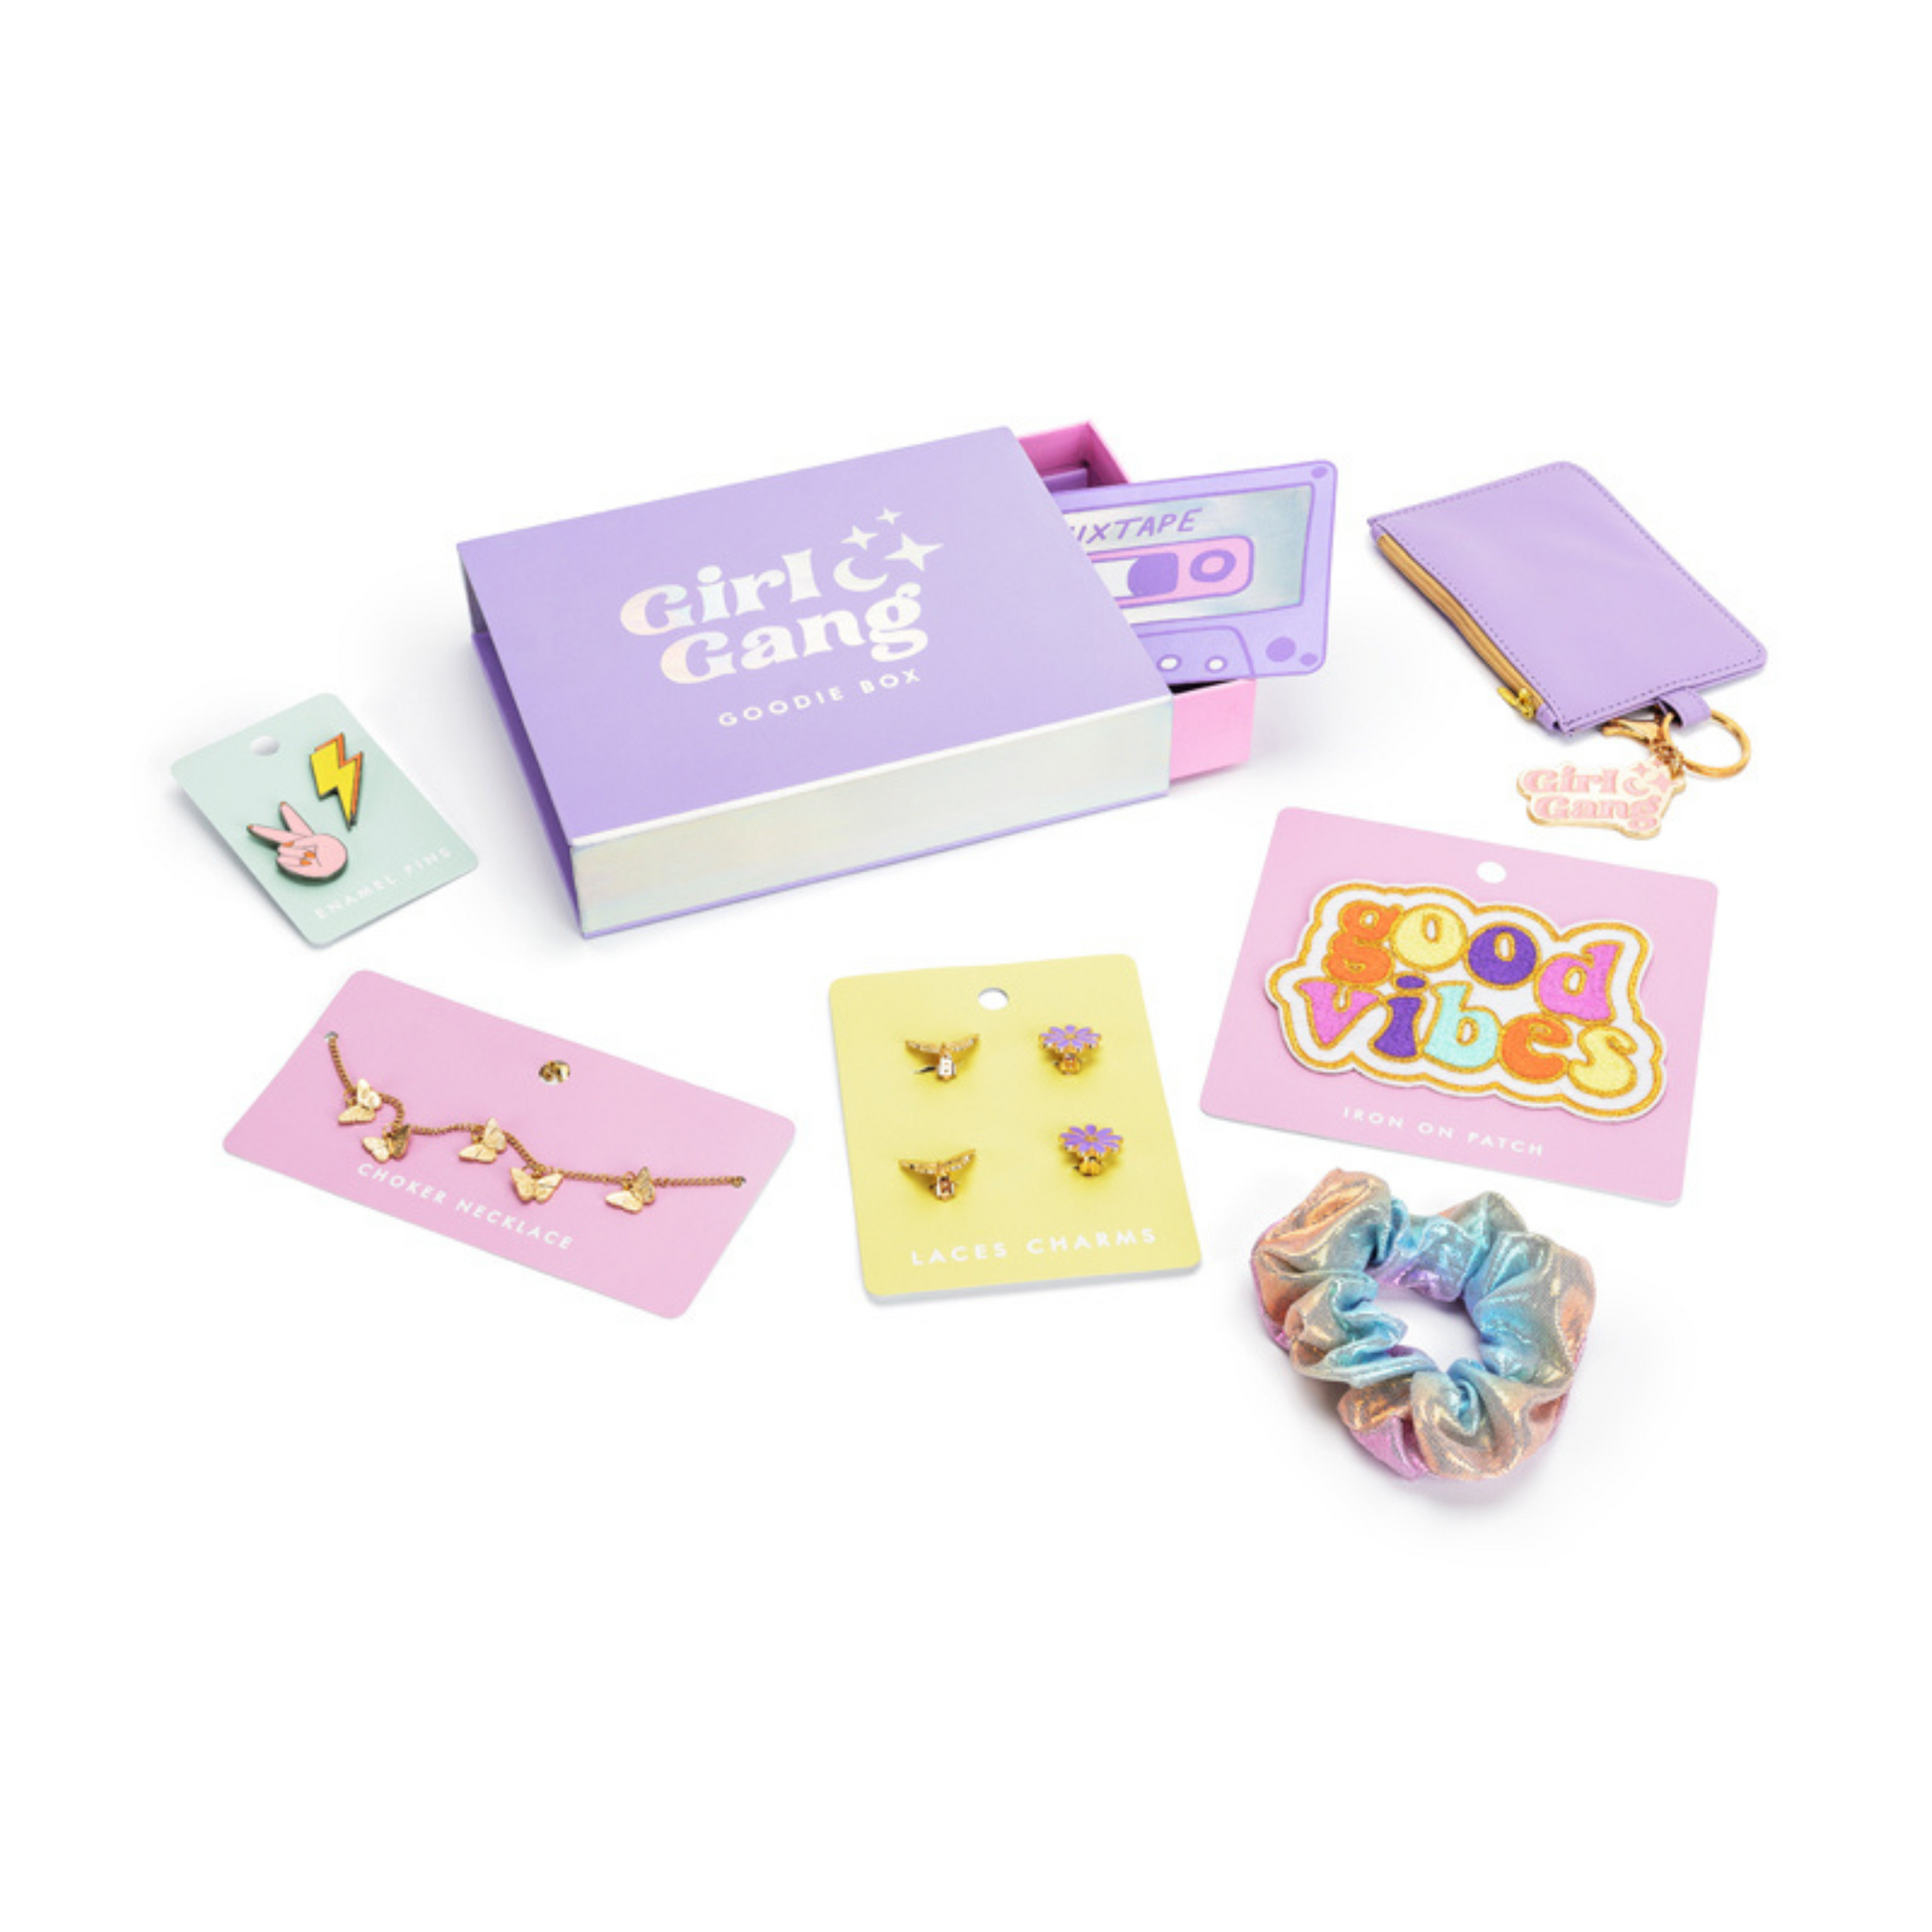 girl gang gift box - what's inside